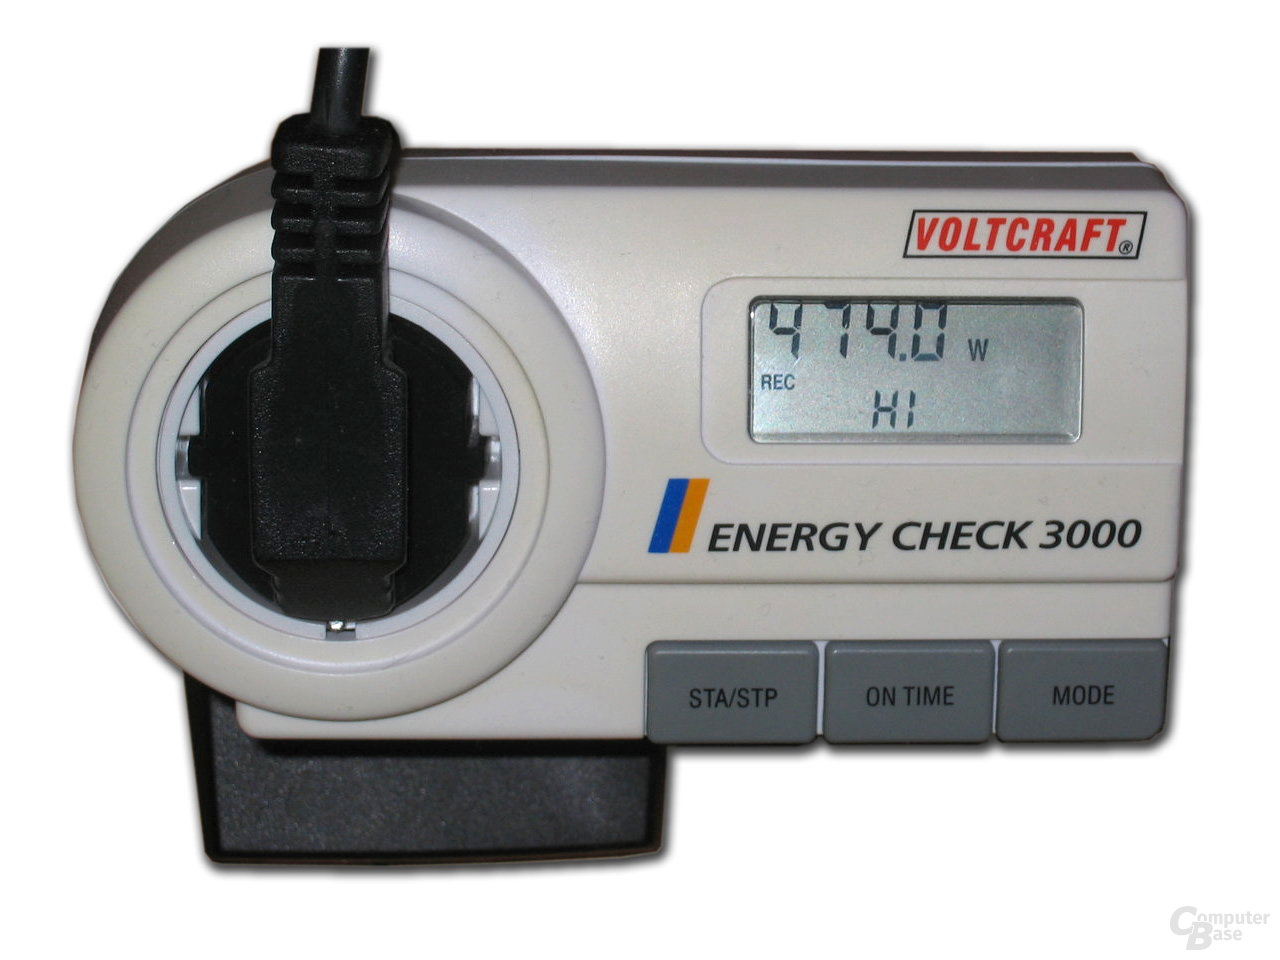 Stromverbrauchsmessung mit Voltcraft Energy Check 3000